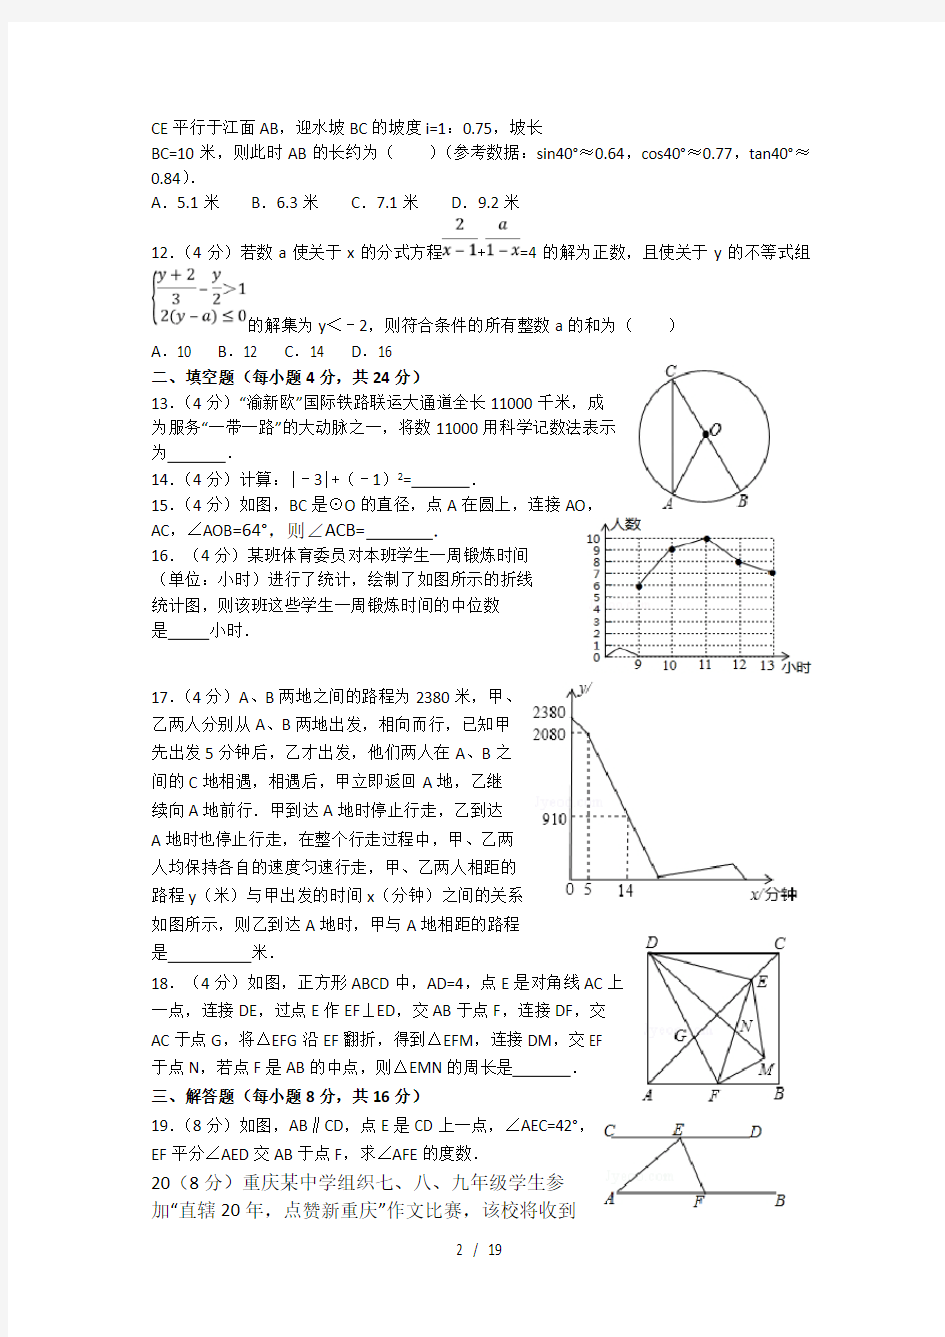 2017年重庆市中考数学试卷(A卷含答案解析版)